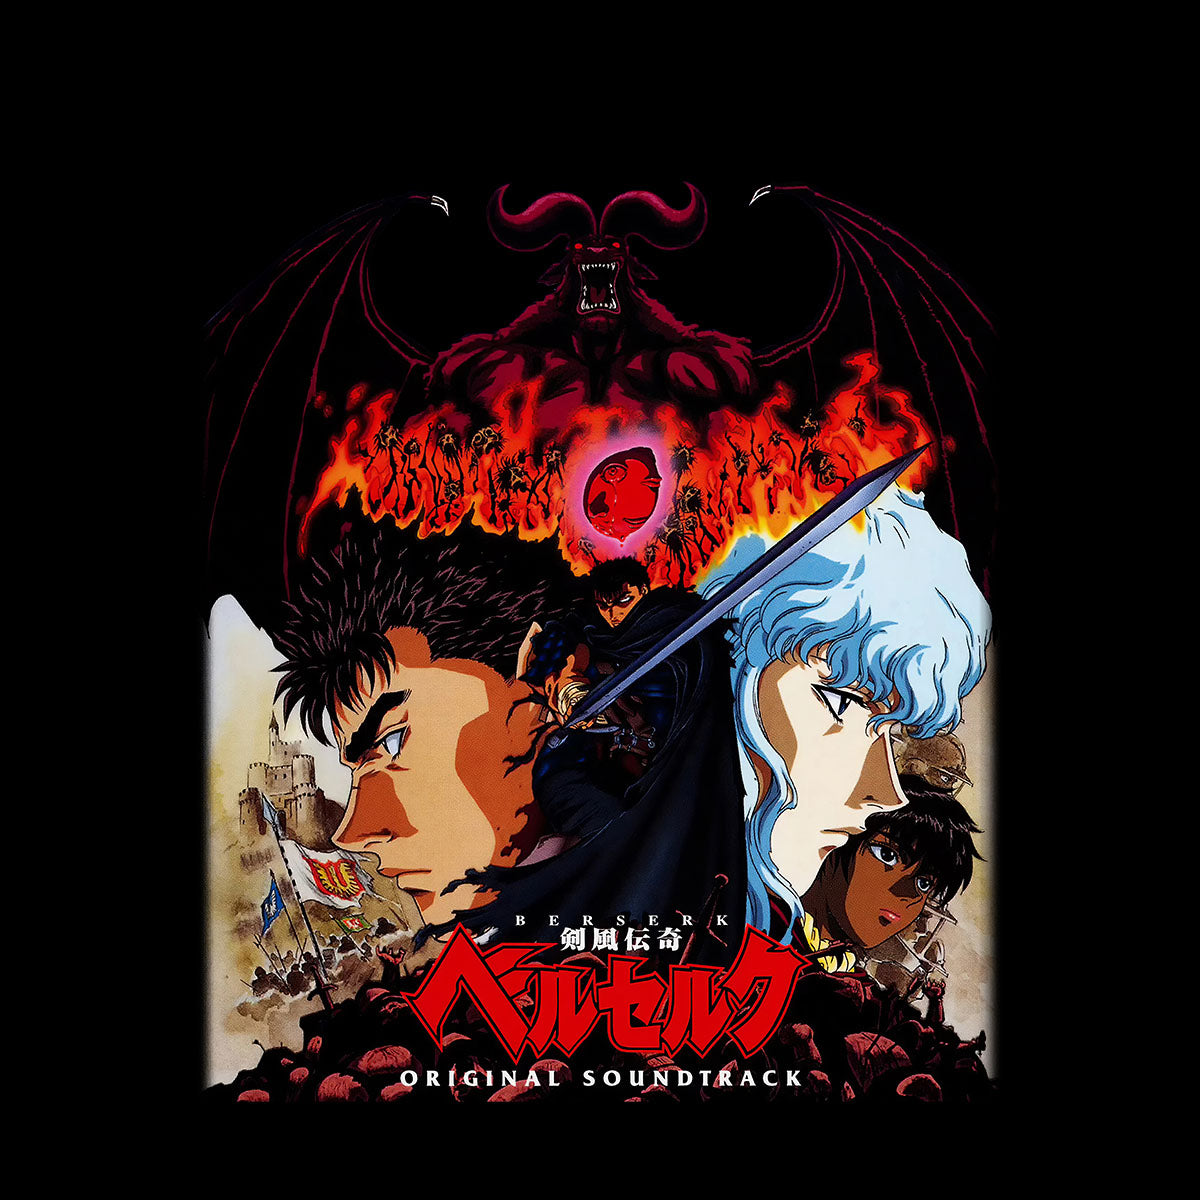 Berserk Original Soundtrack Japanese Anime Manga Adult Unisex Tee